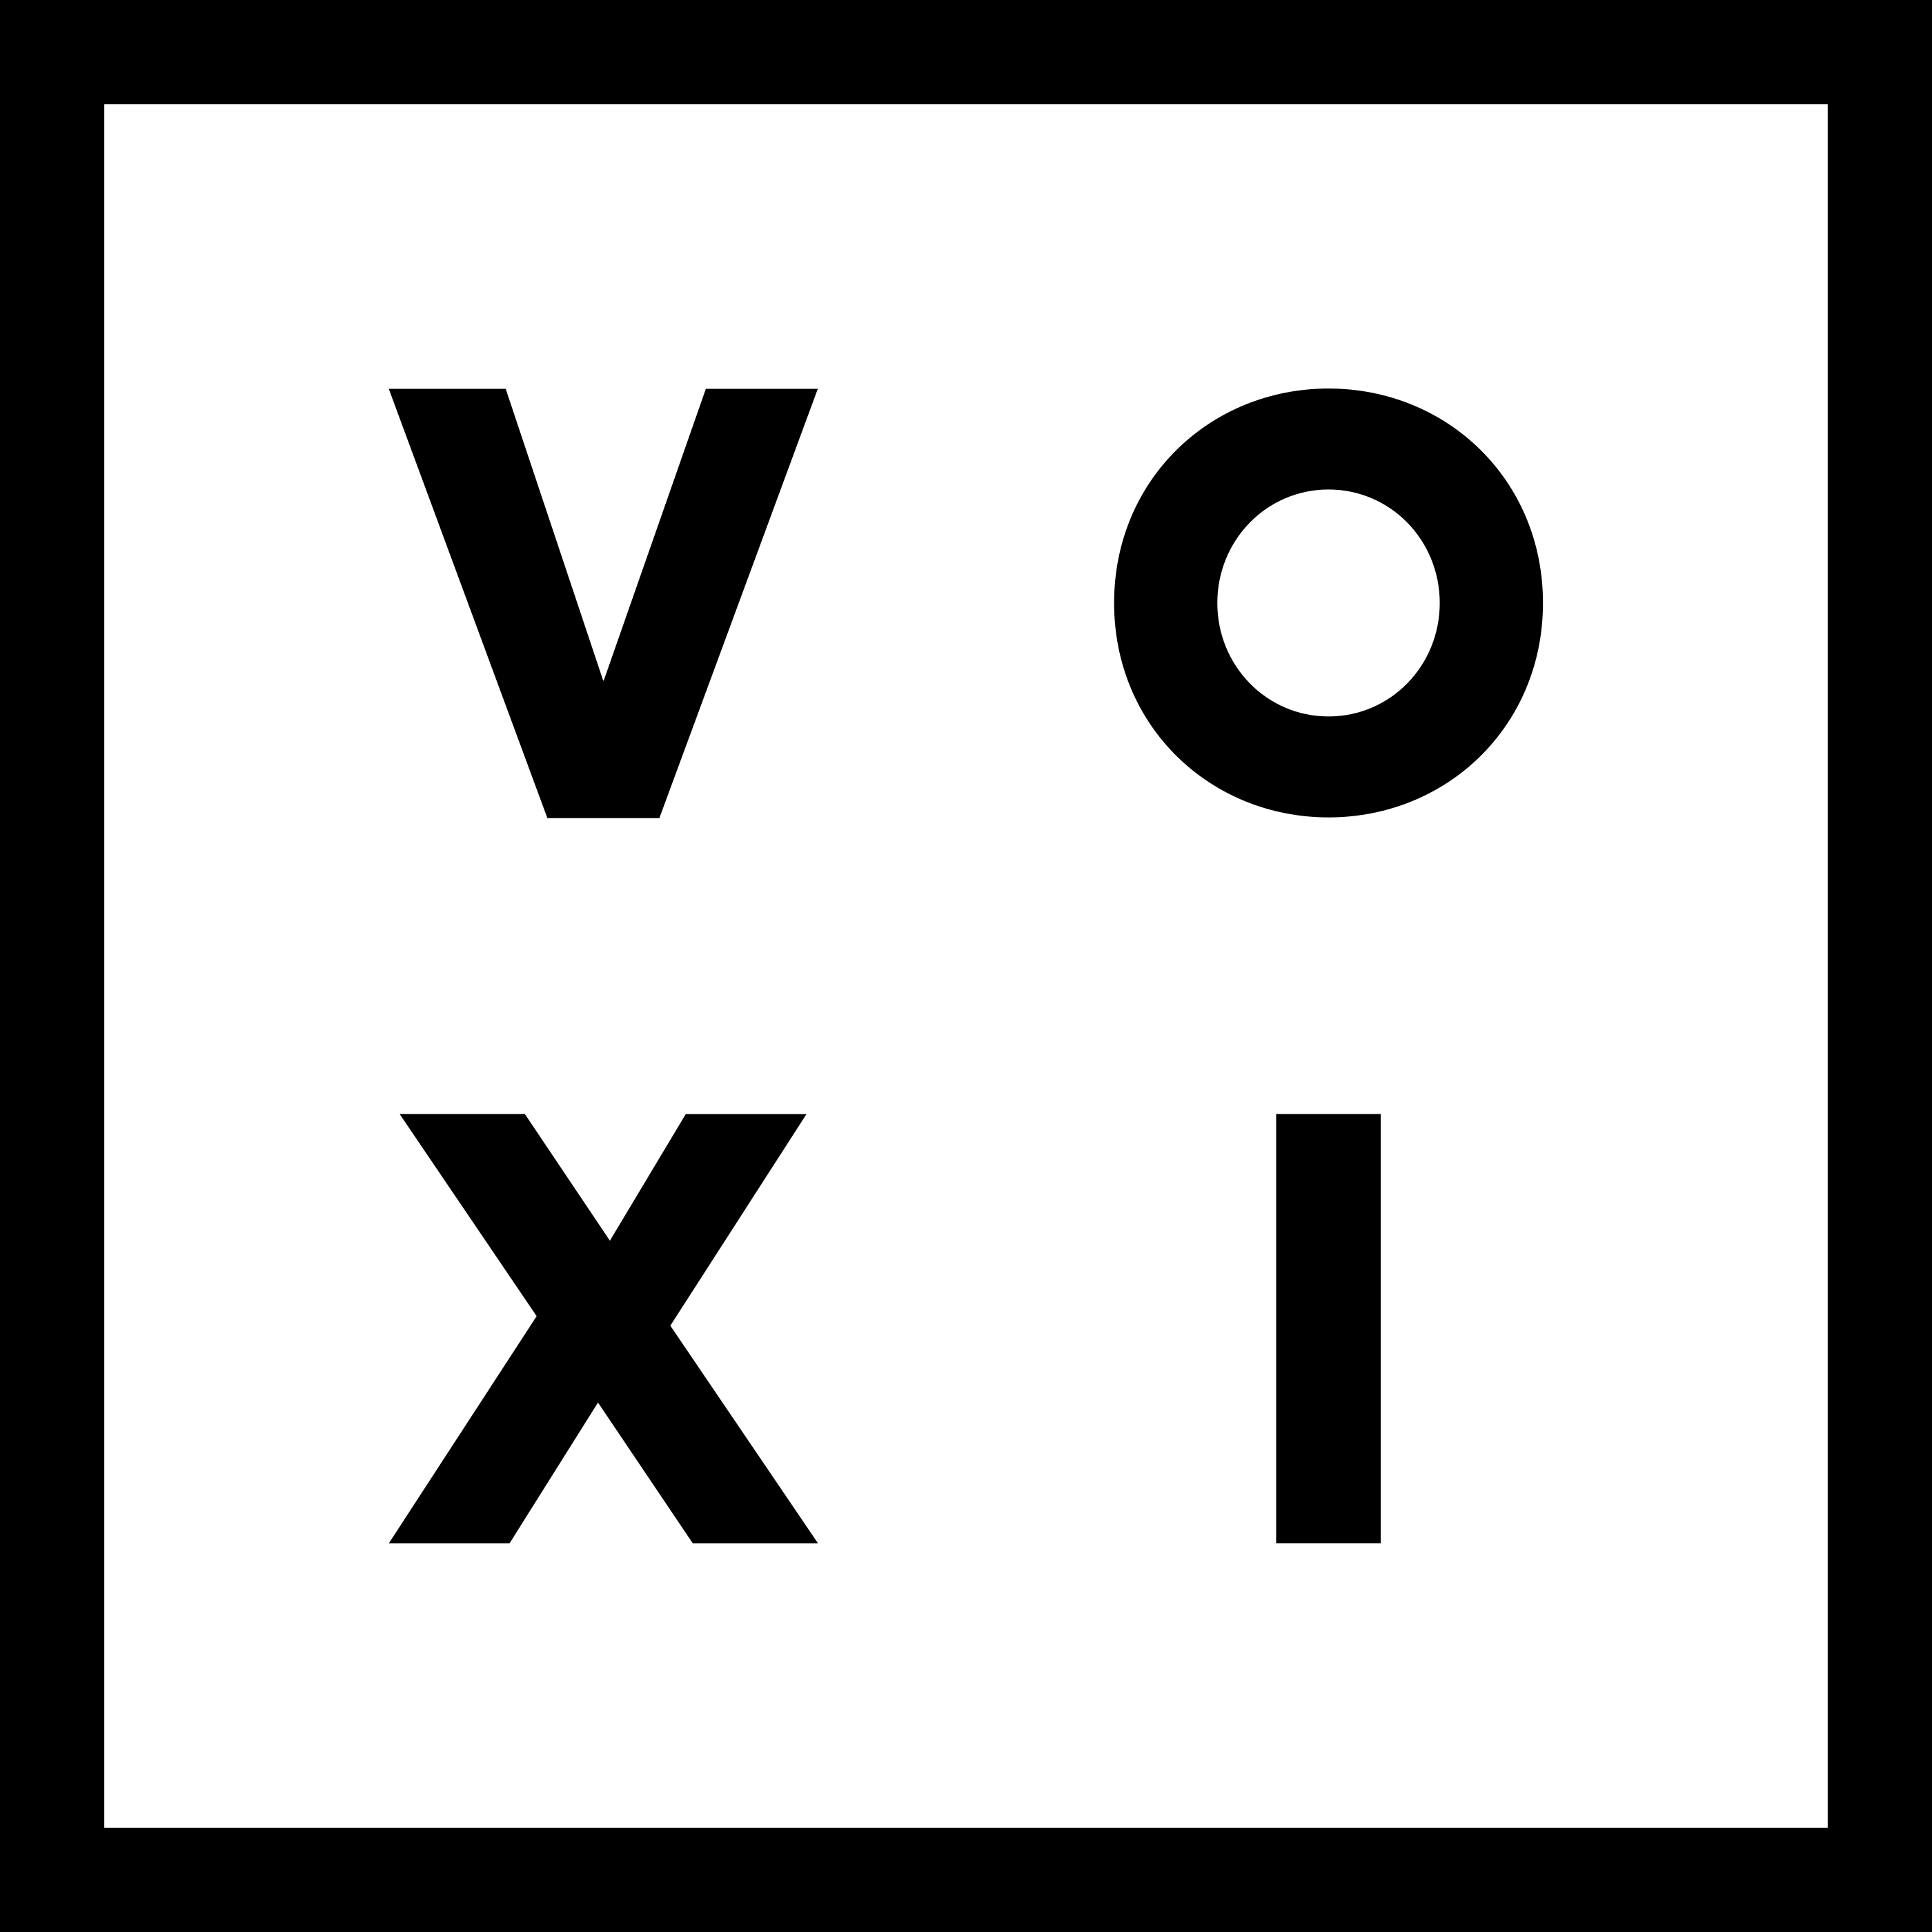 Voxi logo.